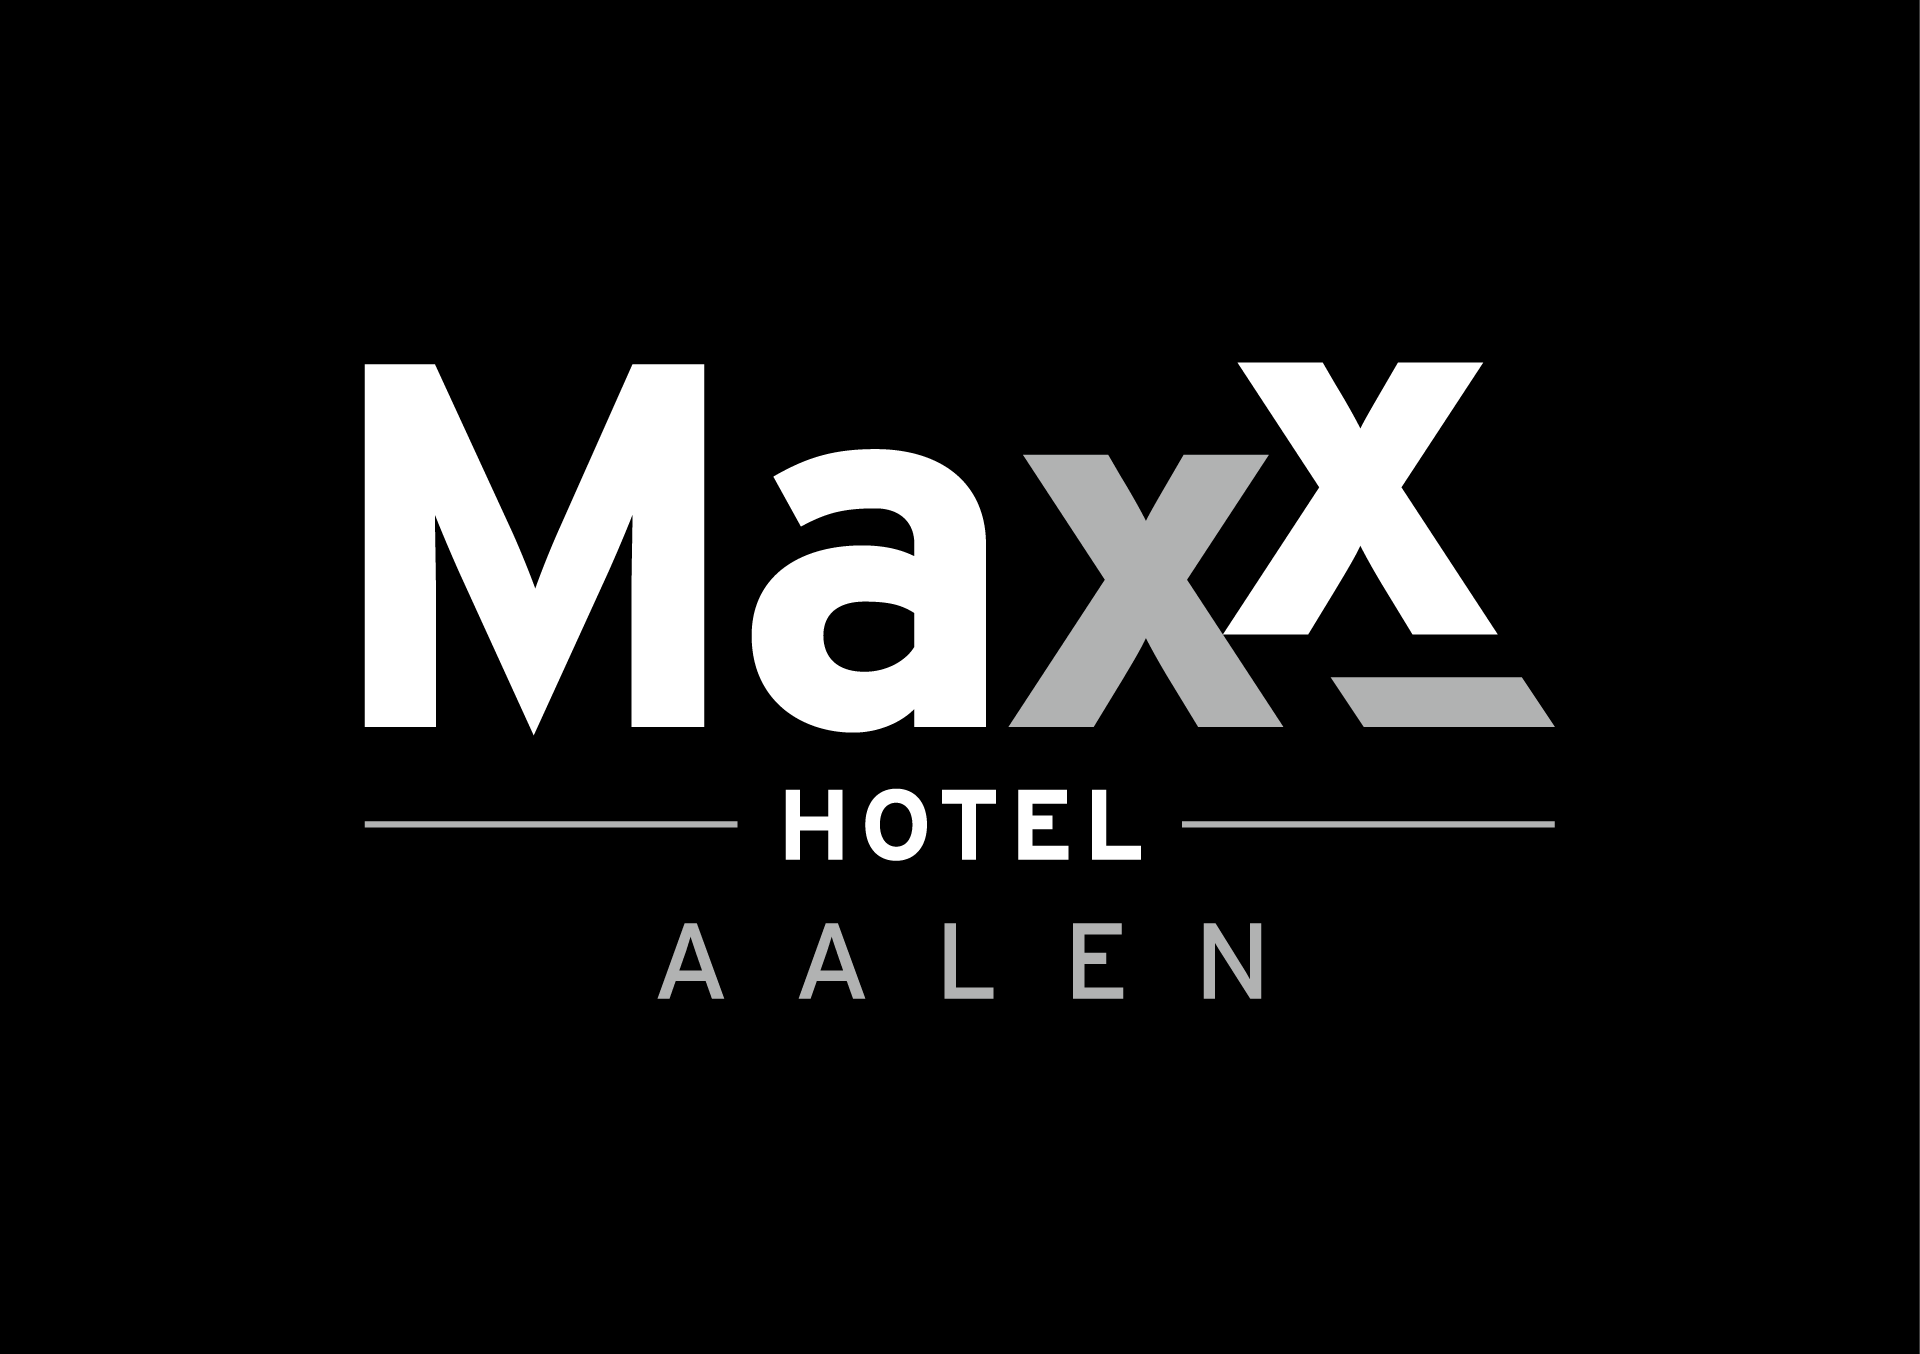 MAXX Logo Aalen Negativ Schwarz